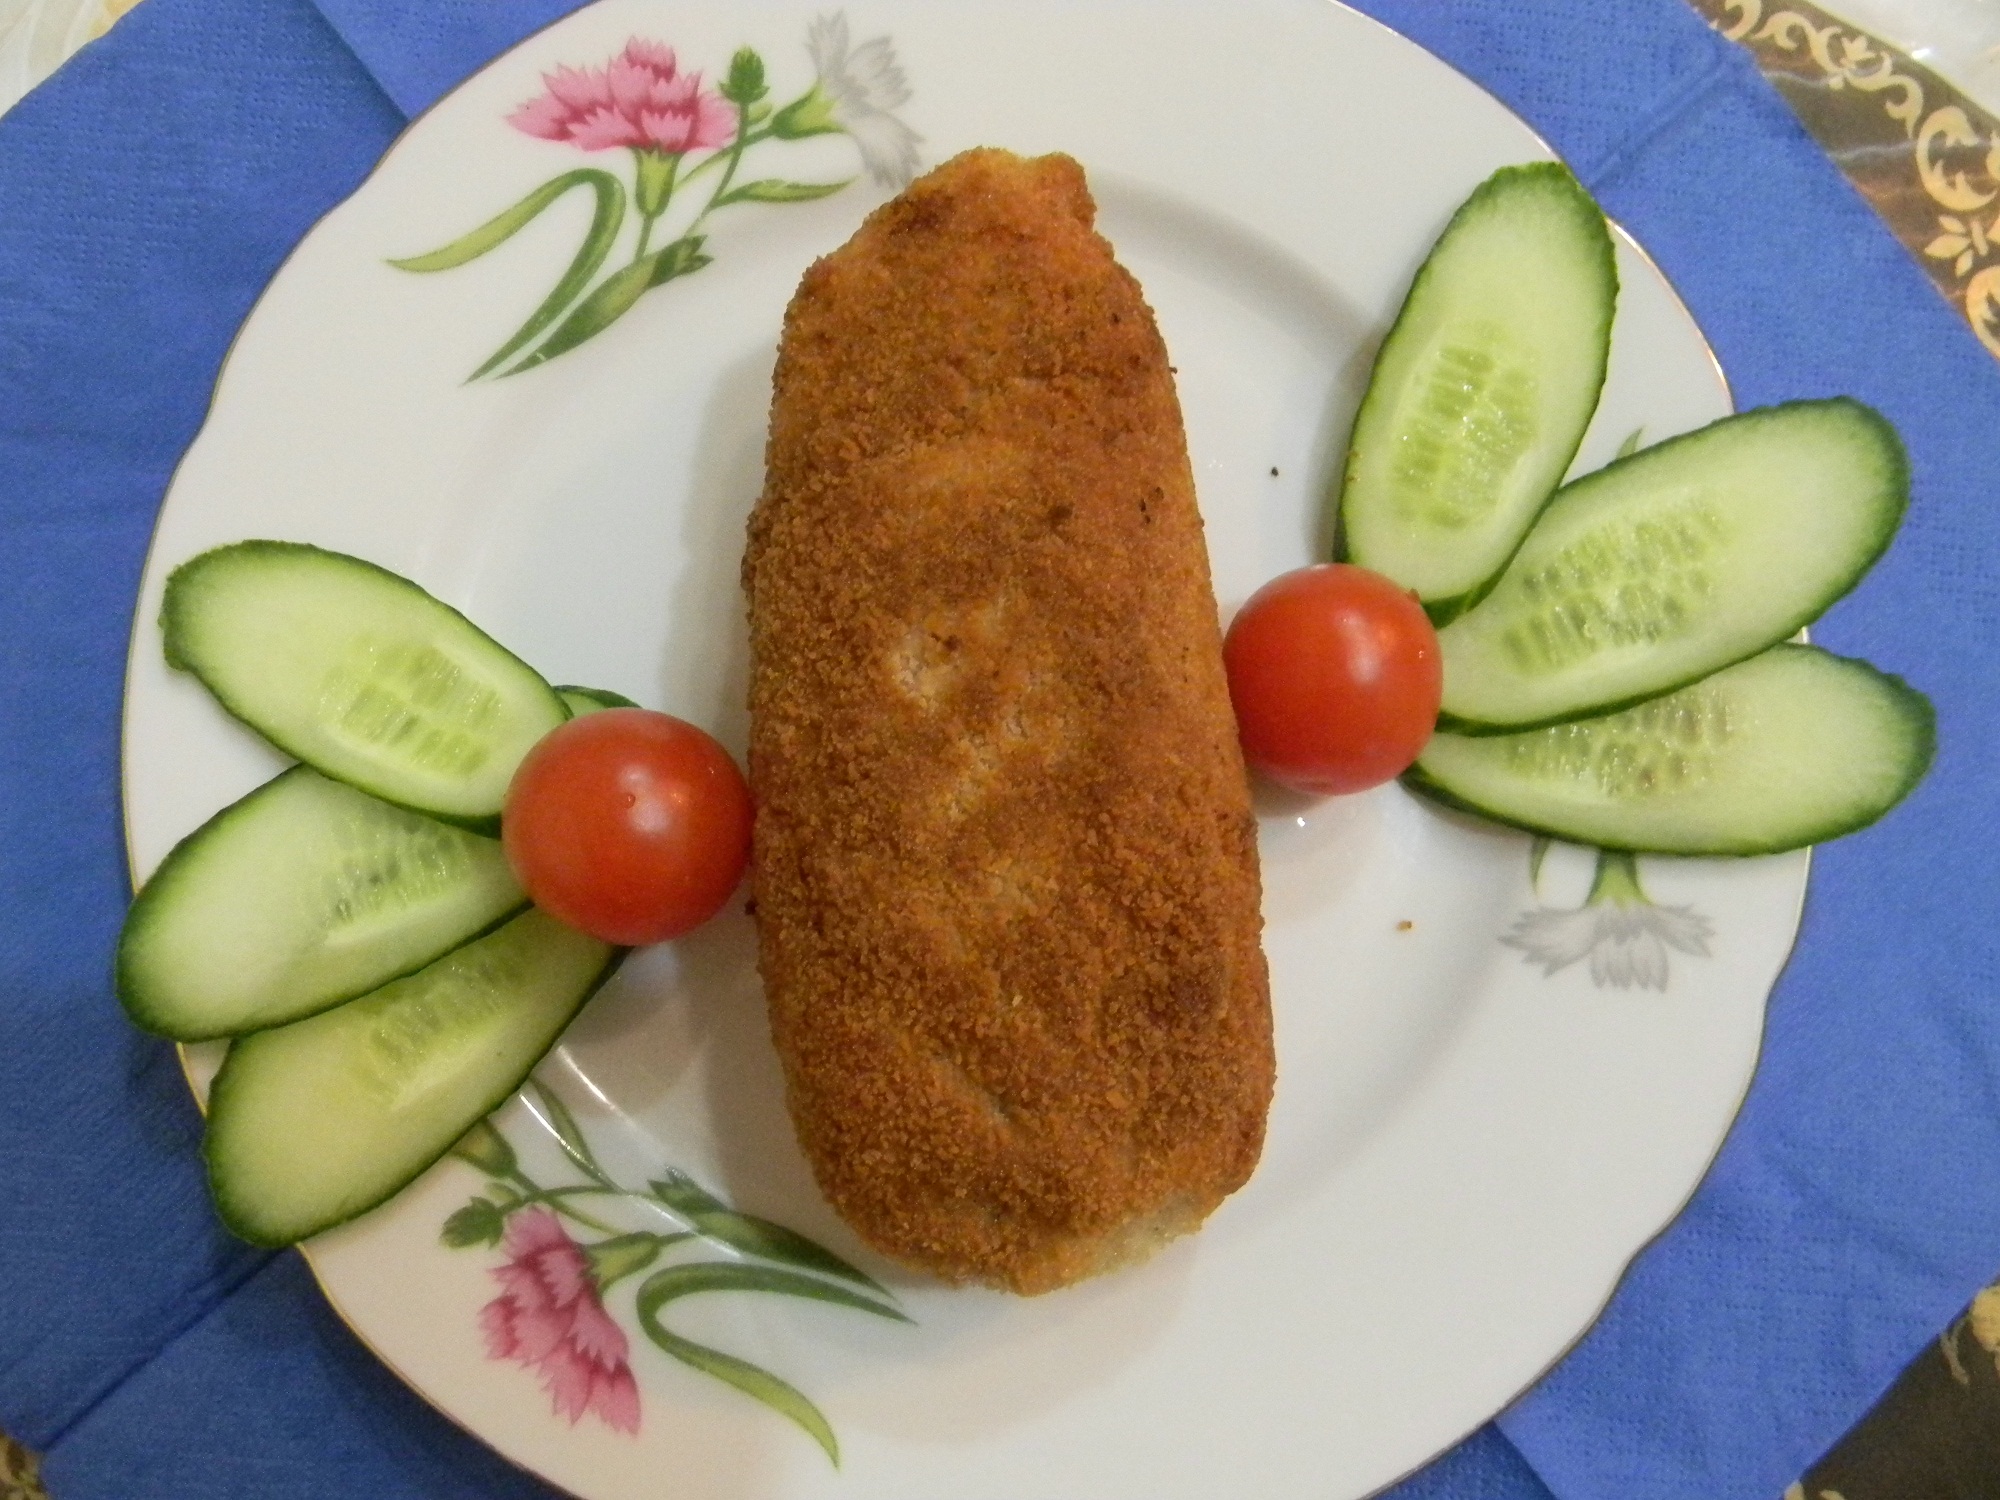 Котлеты по киевски рецепт с пошаговым фото из куриного филе с маслом